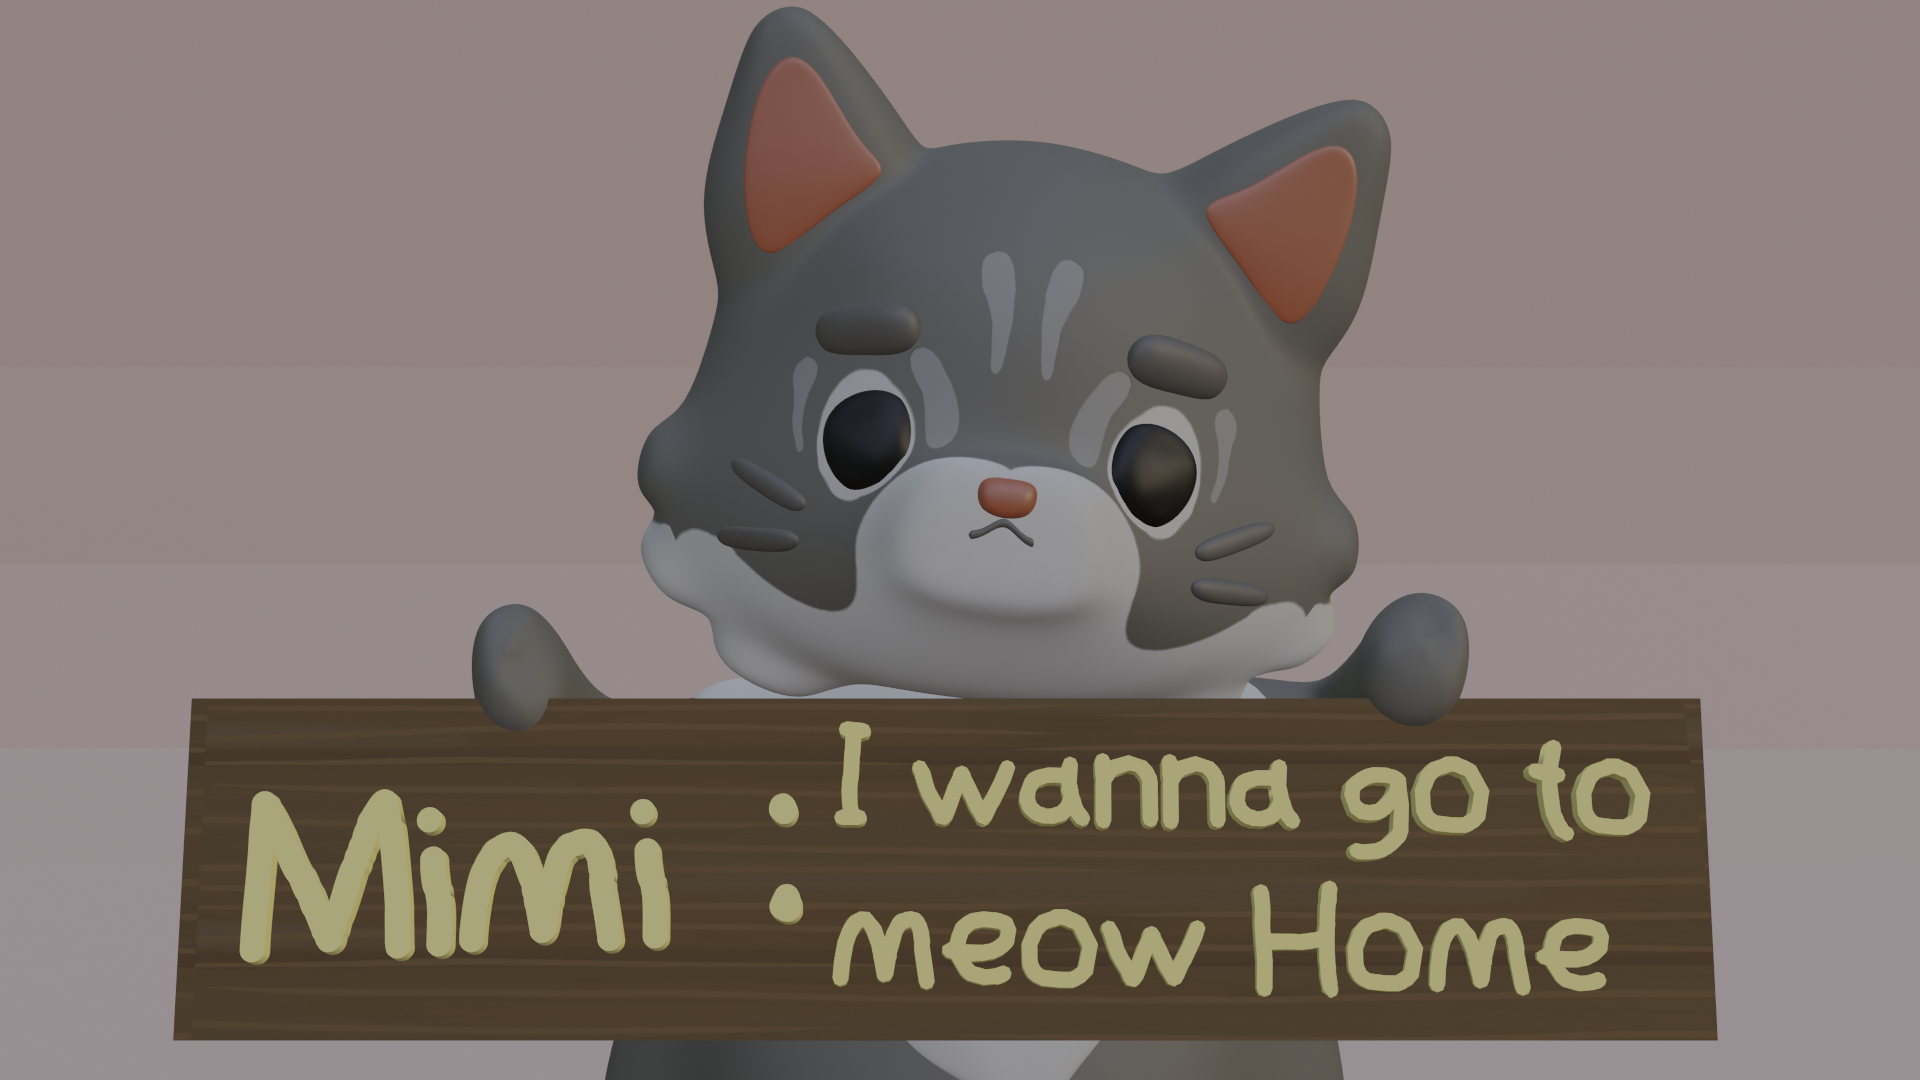 Mimi: I wanna go to Meow Home